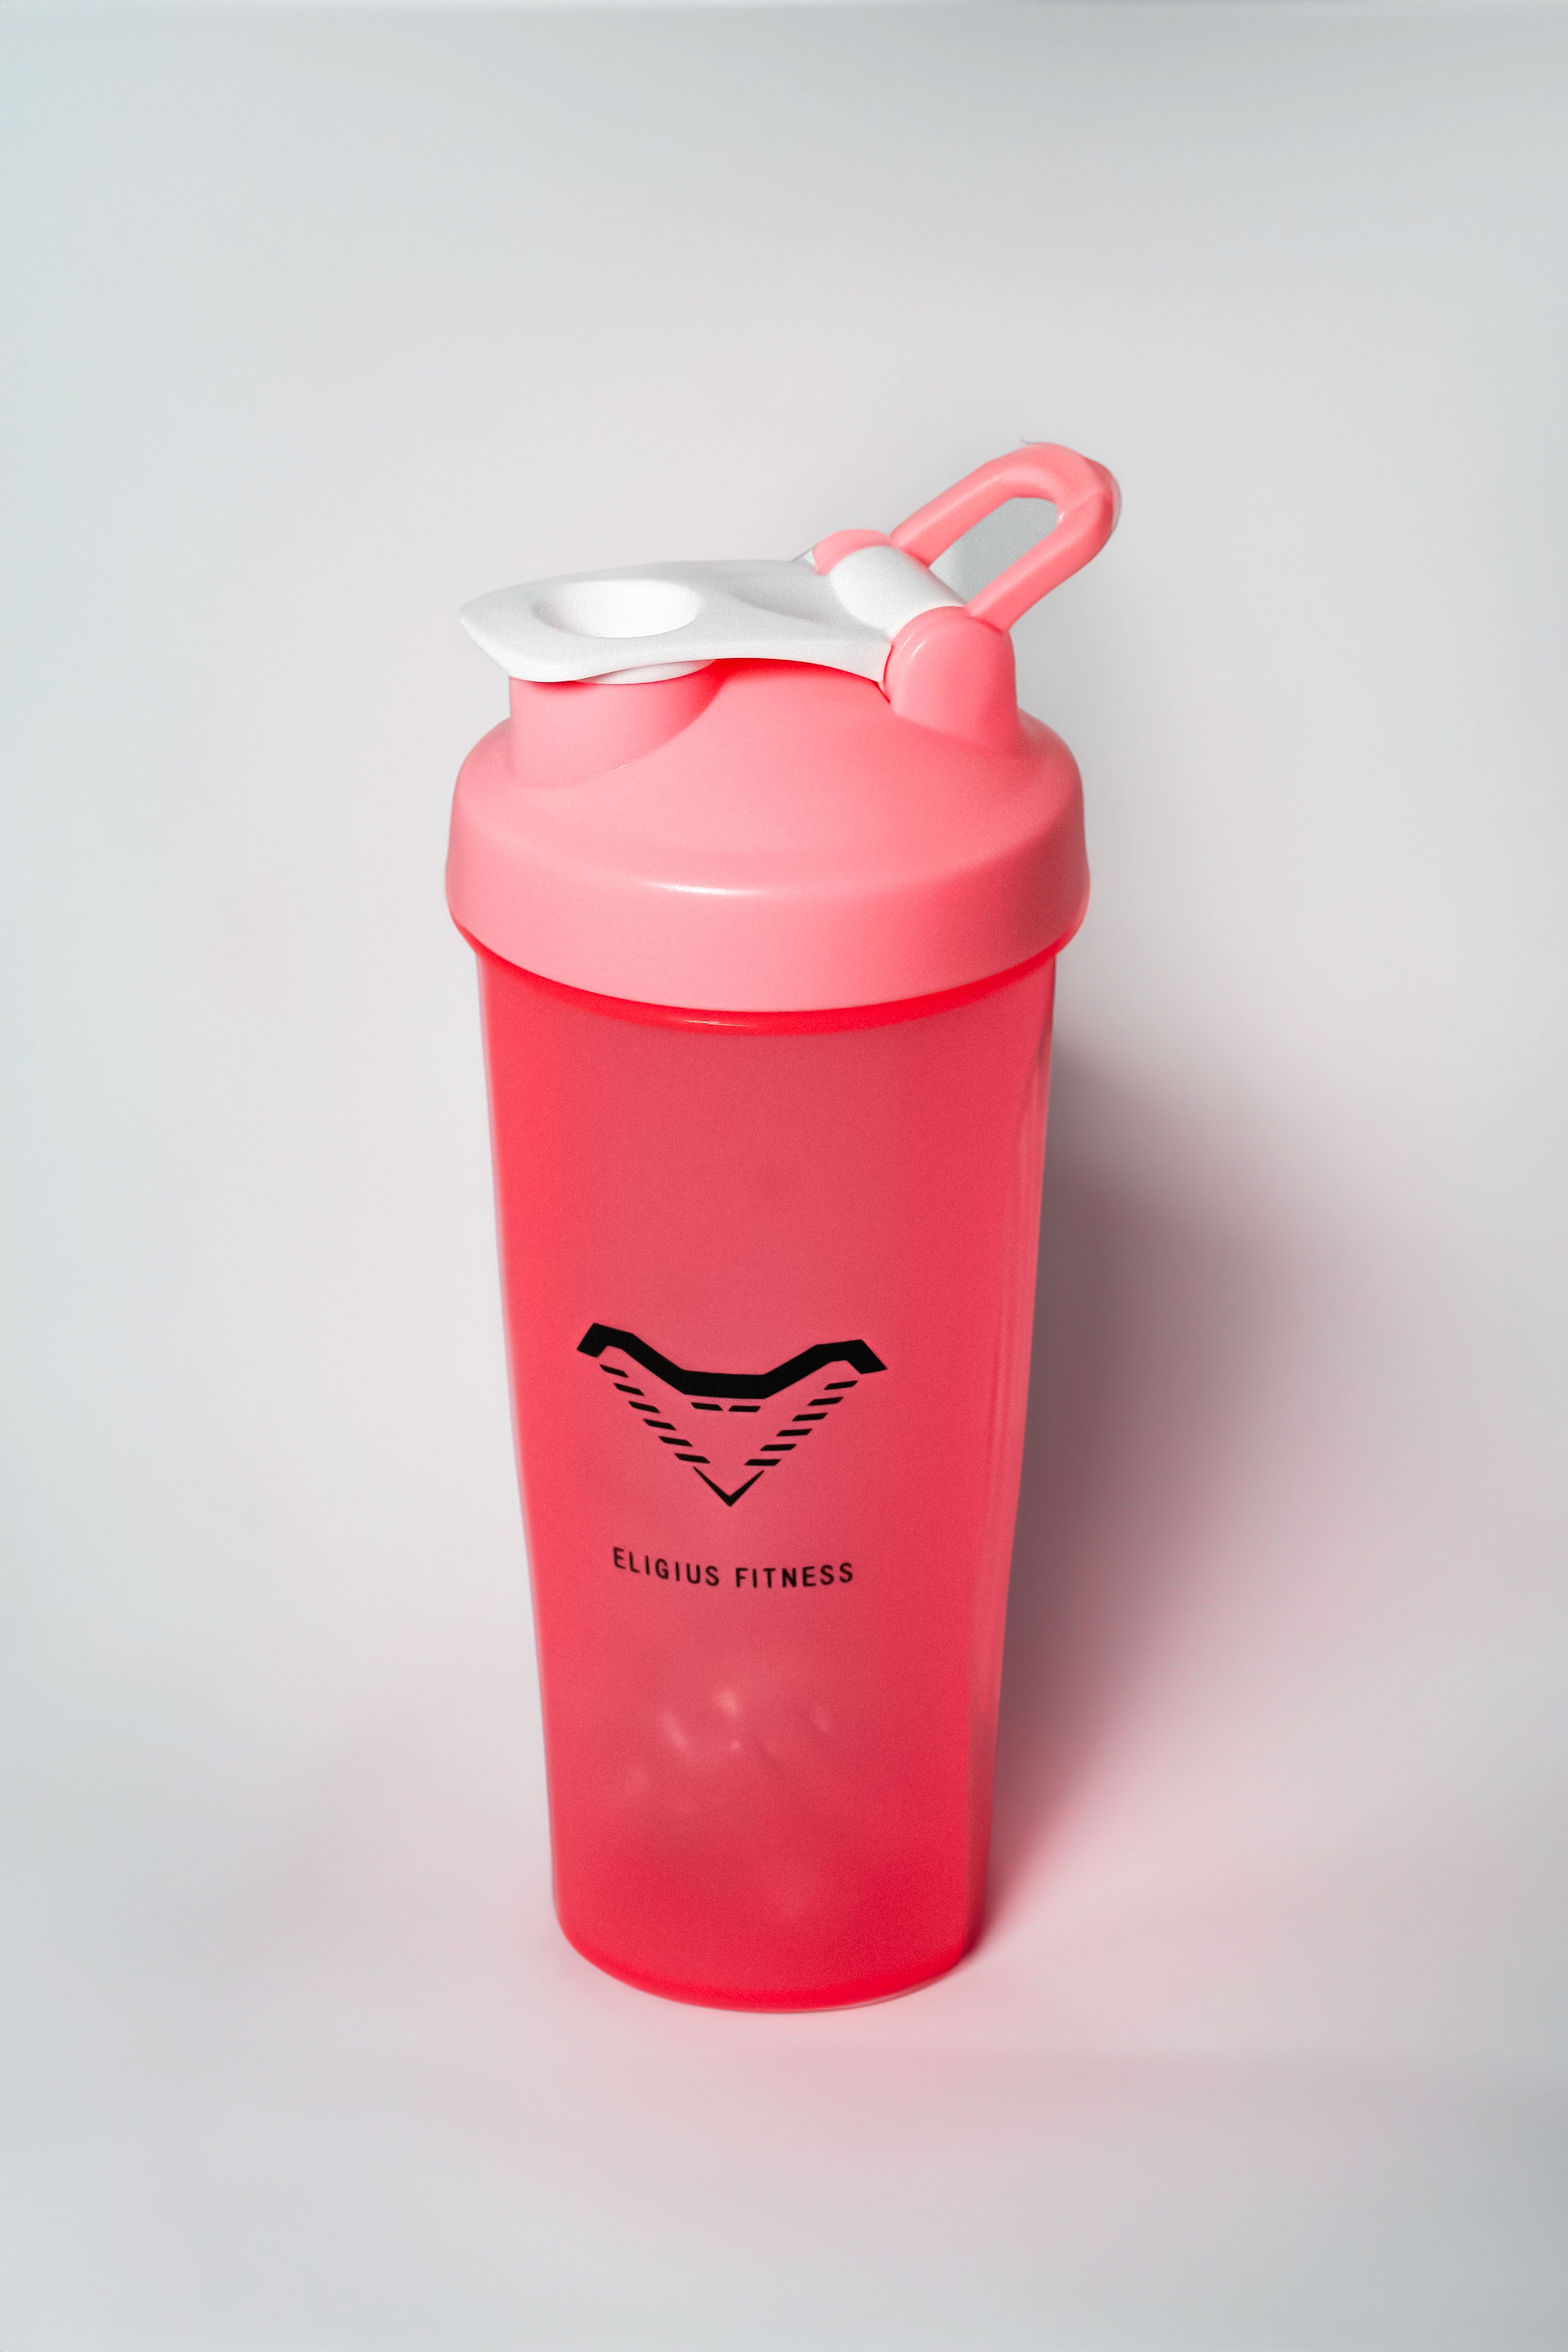 Eligius Fitness Pink Shaker Bottle